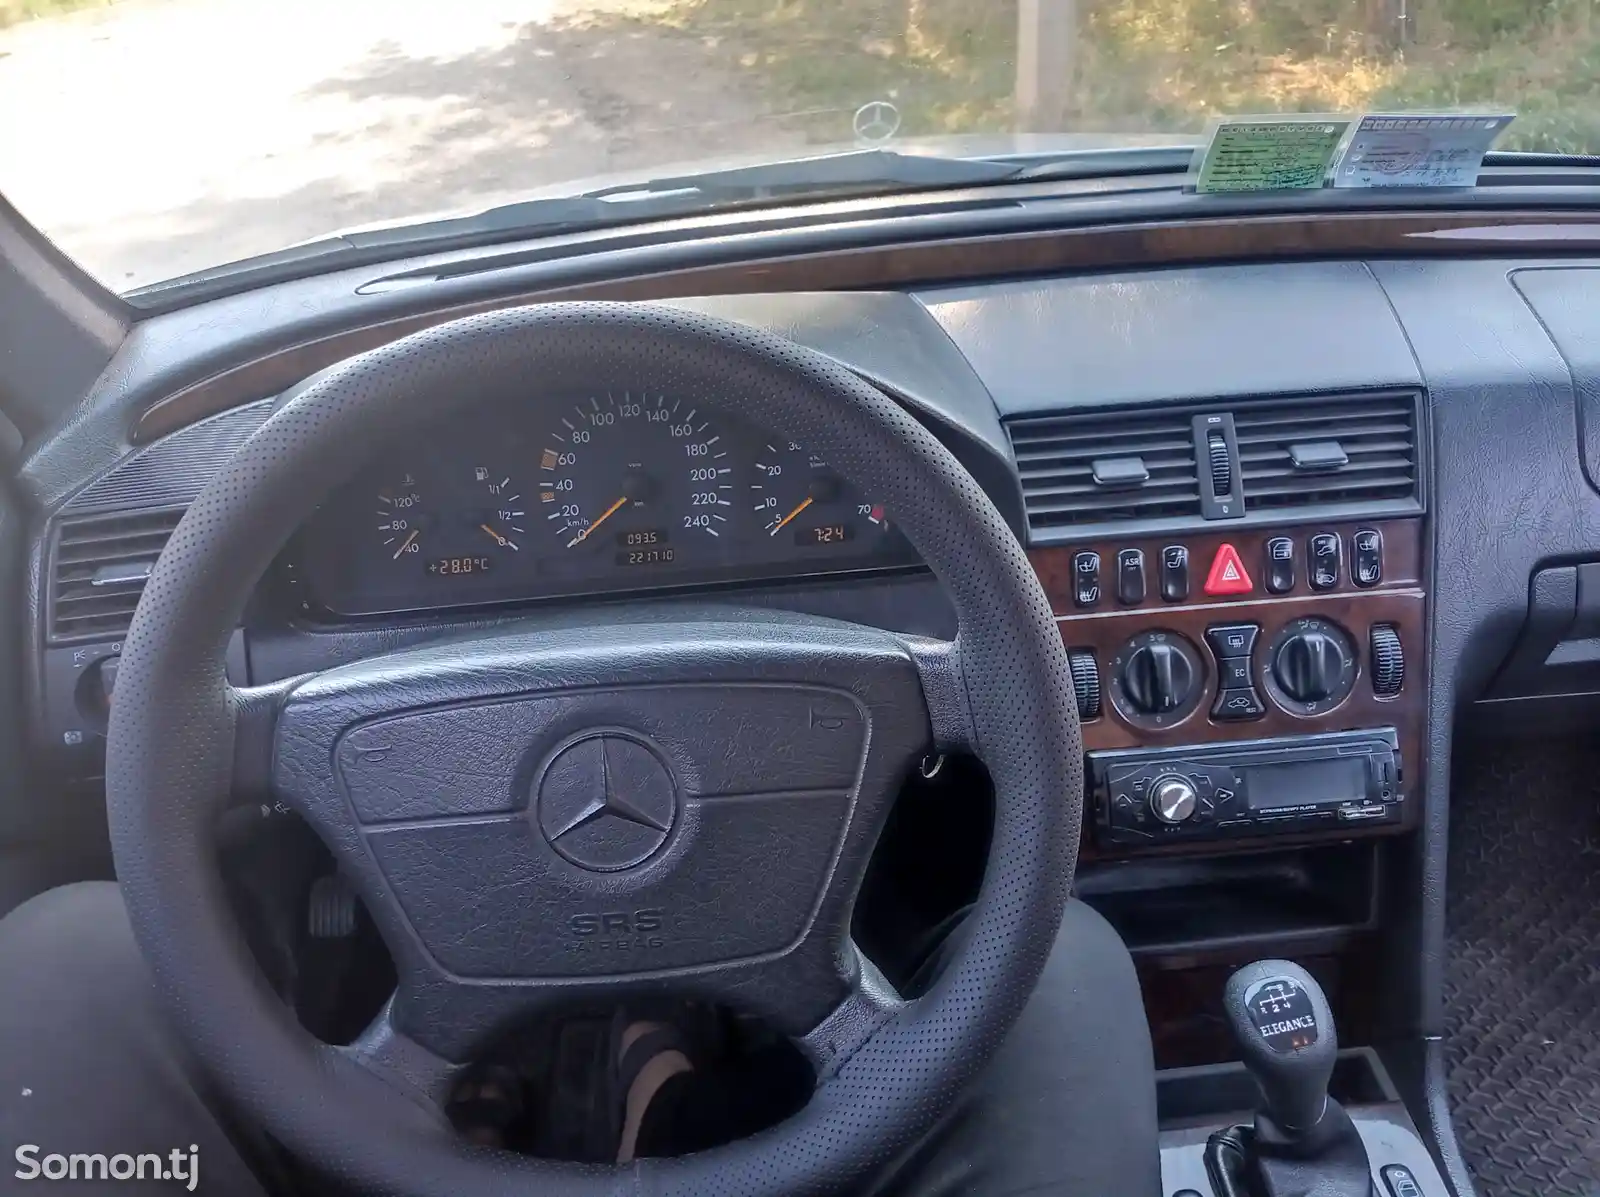 Mercedes-Benz C class, 1998-6